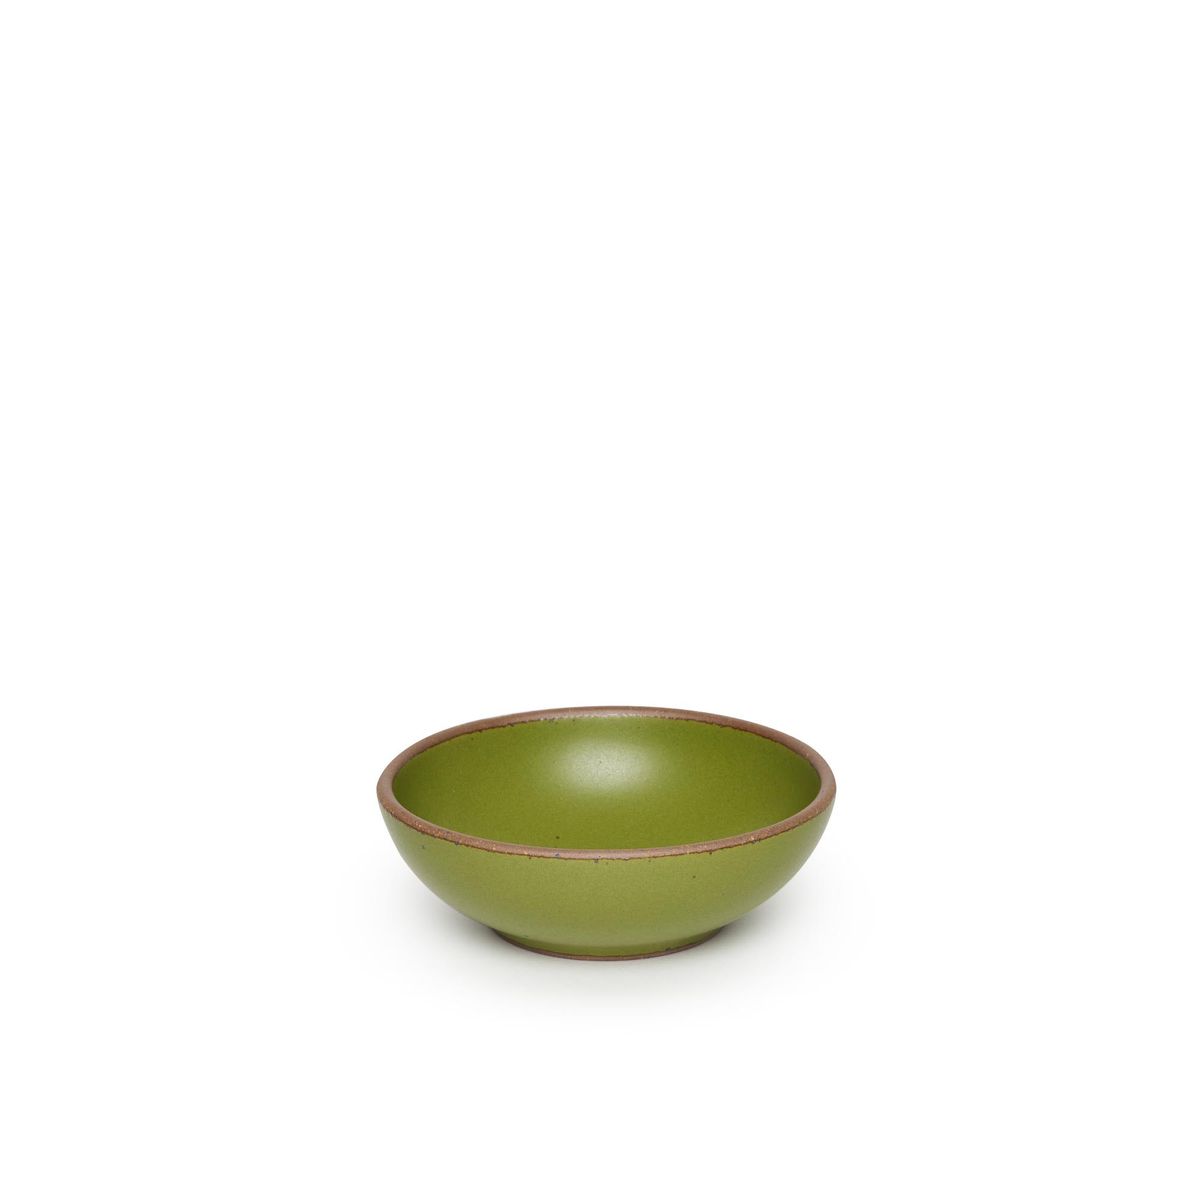 Breakfast Bowl in Fiddlehead, a mossy, olive green.